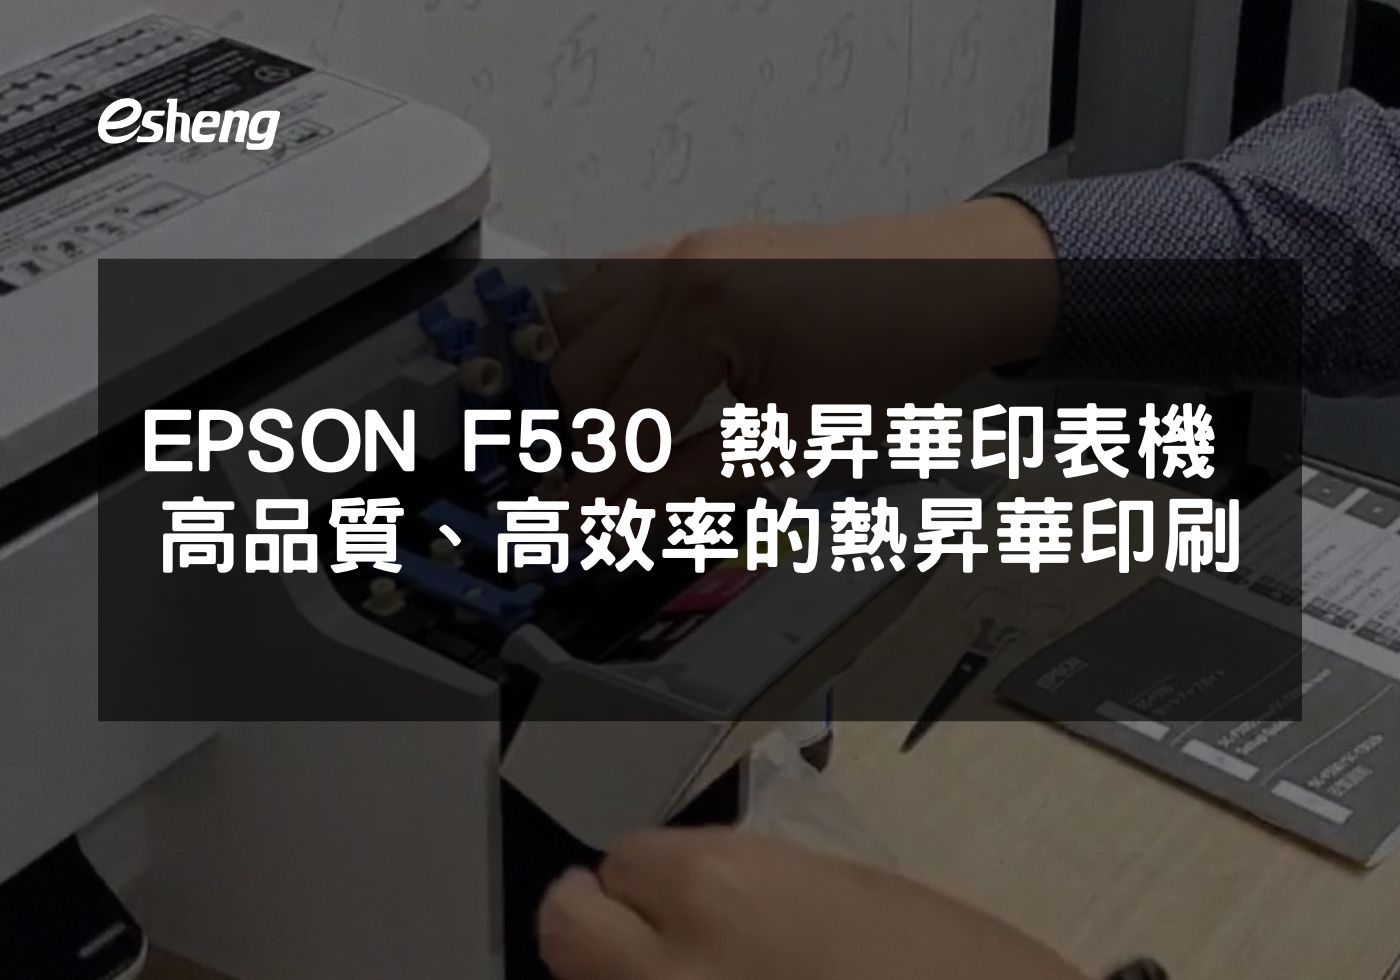 如何通過EPSON F530熱昇華印表機實現創意印刷